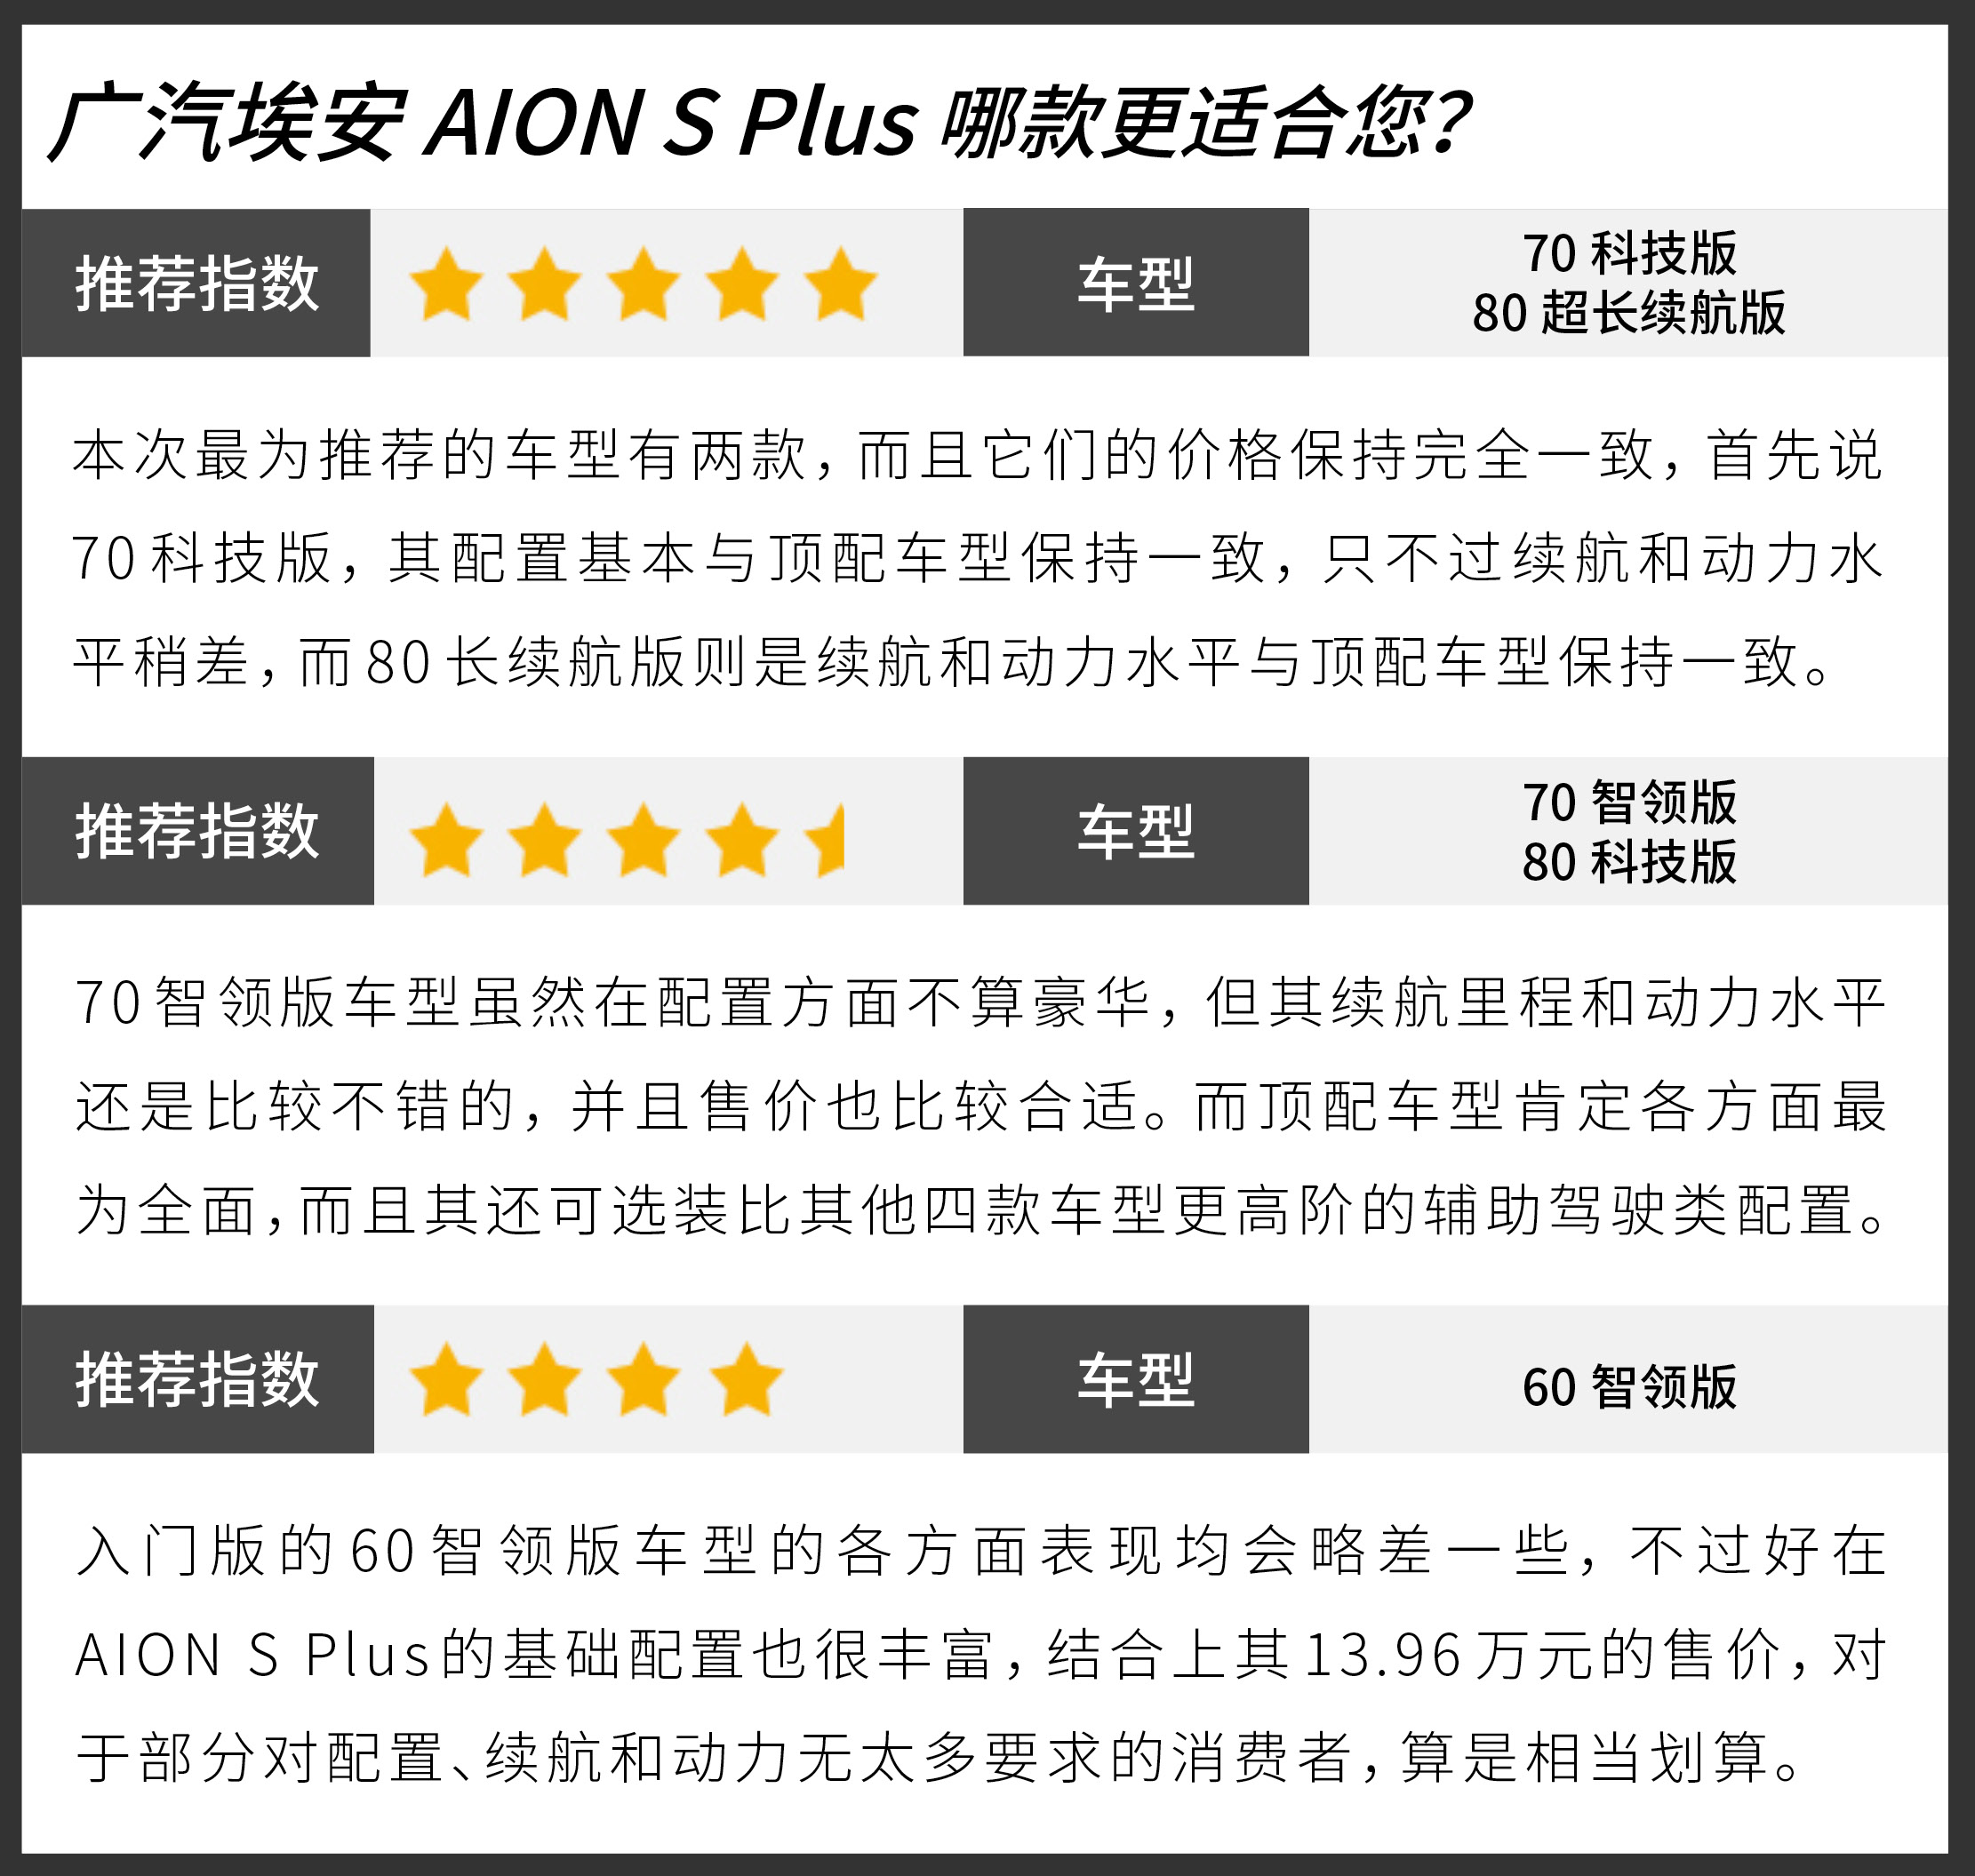 售价15.96万元的两款都不错 广汽埃安AION S Plus购买建议